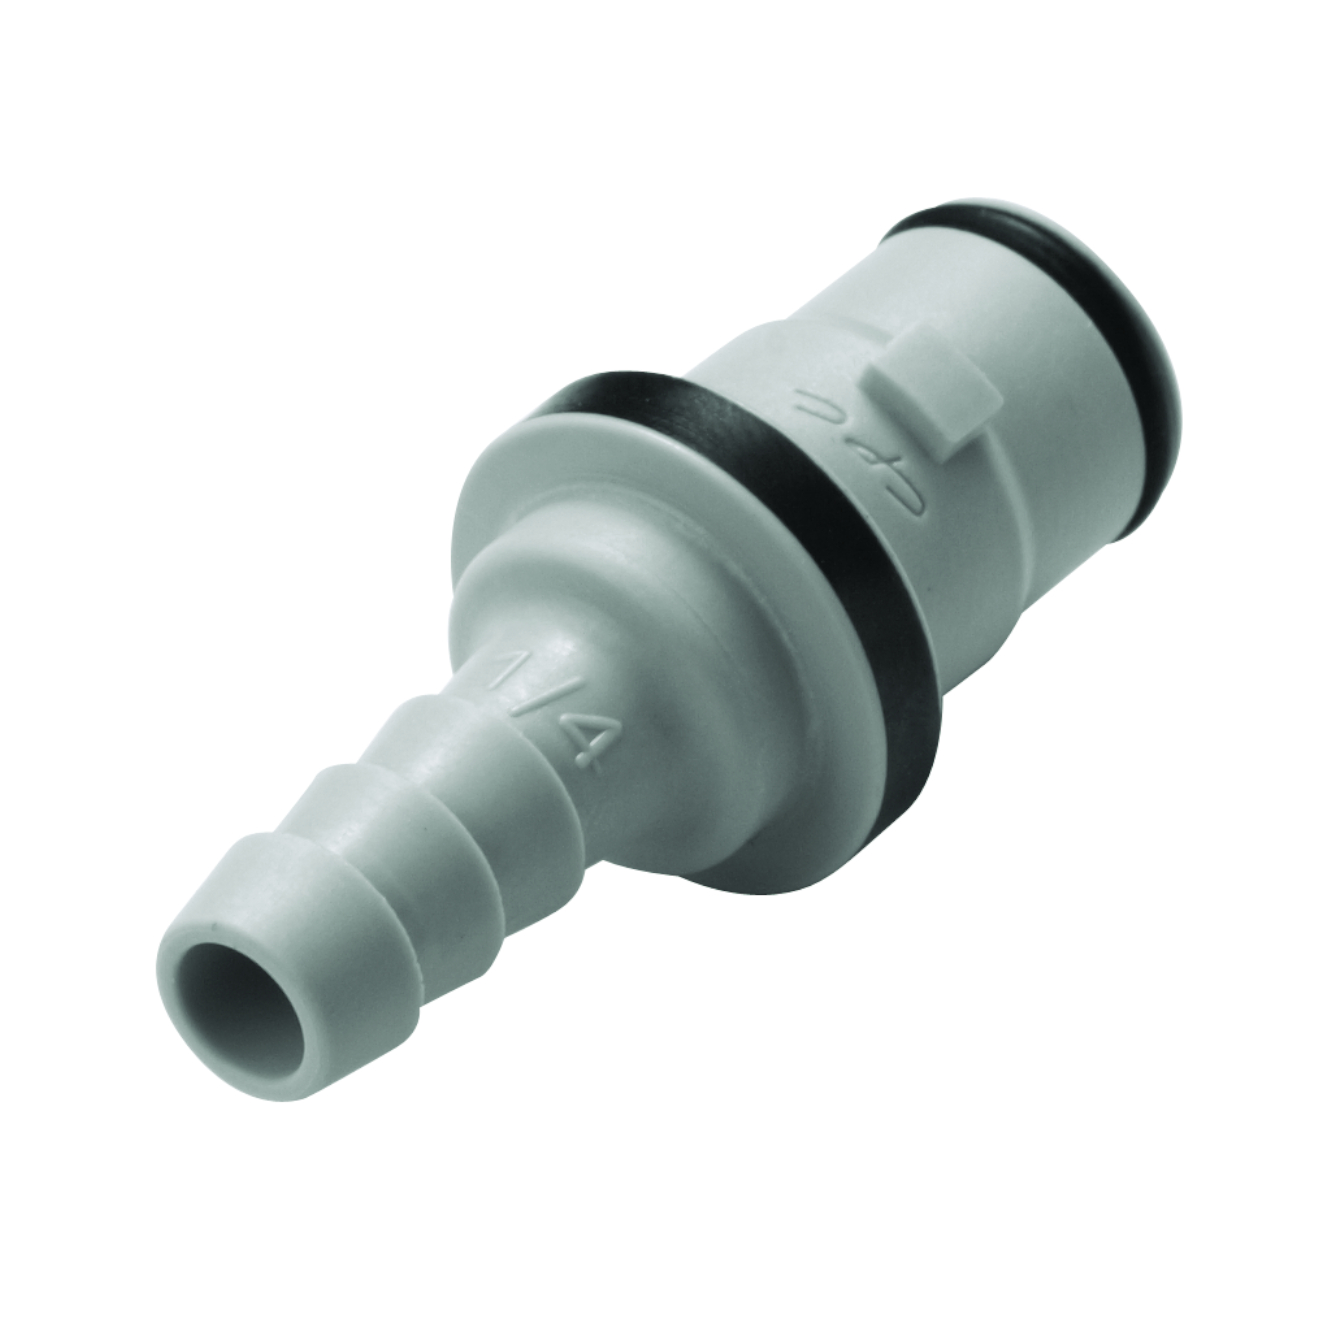 CPC Schnellverschlussstecker mit Absperrung, 1/4" (6,4 mm) ID, Glasfaserverstärktes Polypropylen